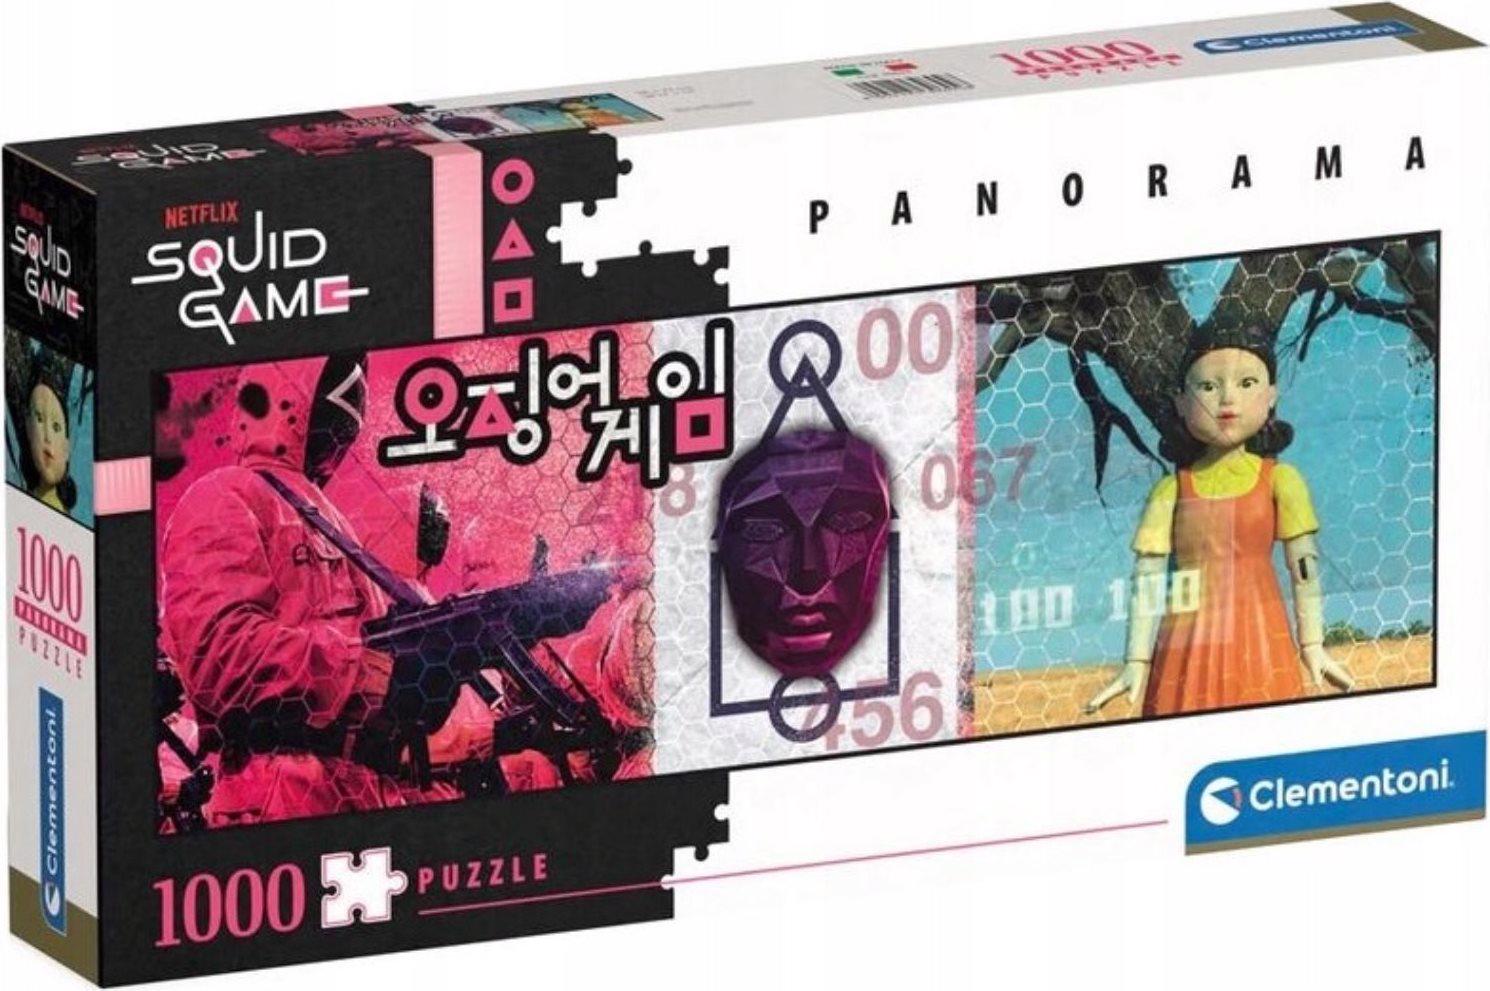 Puzzle Netflix: Squid game 1000